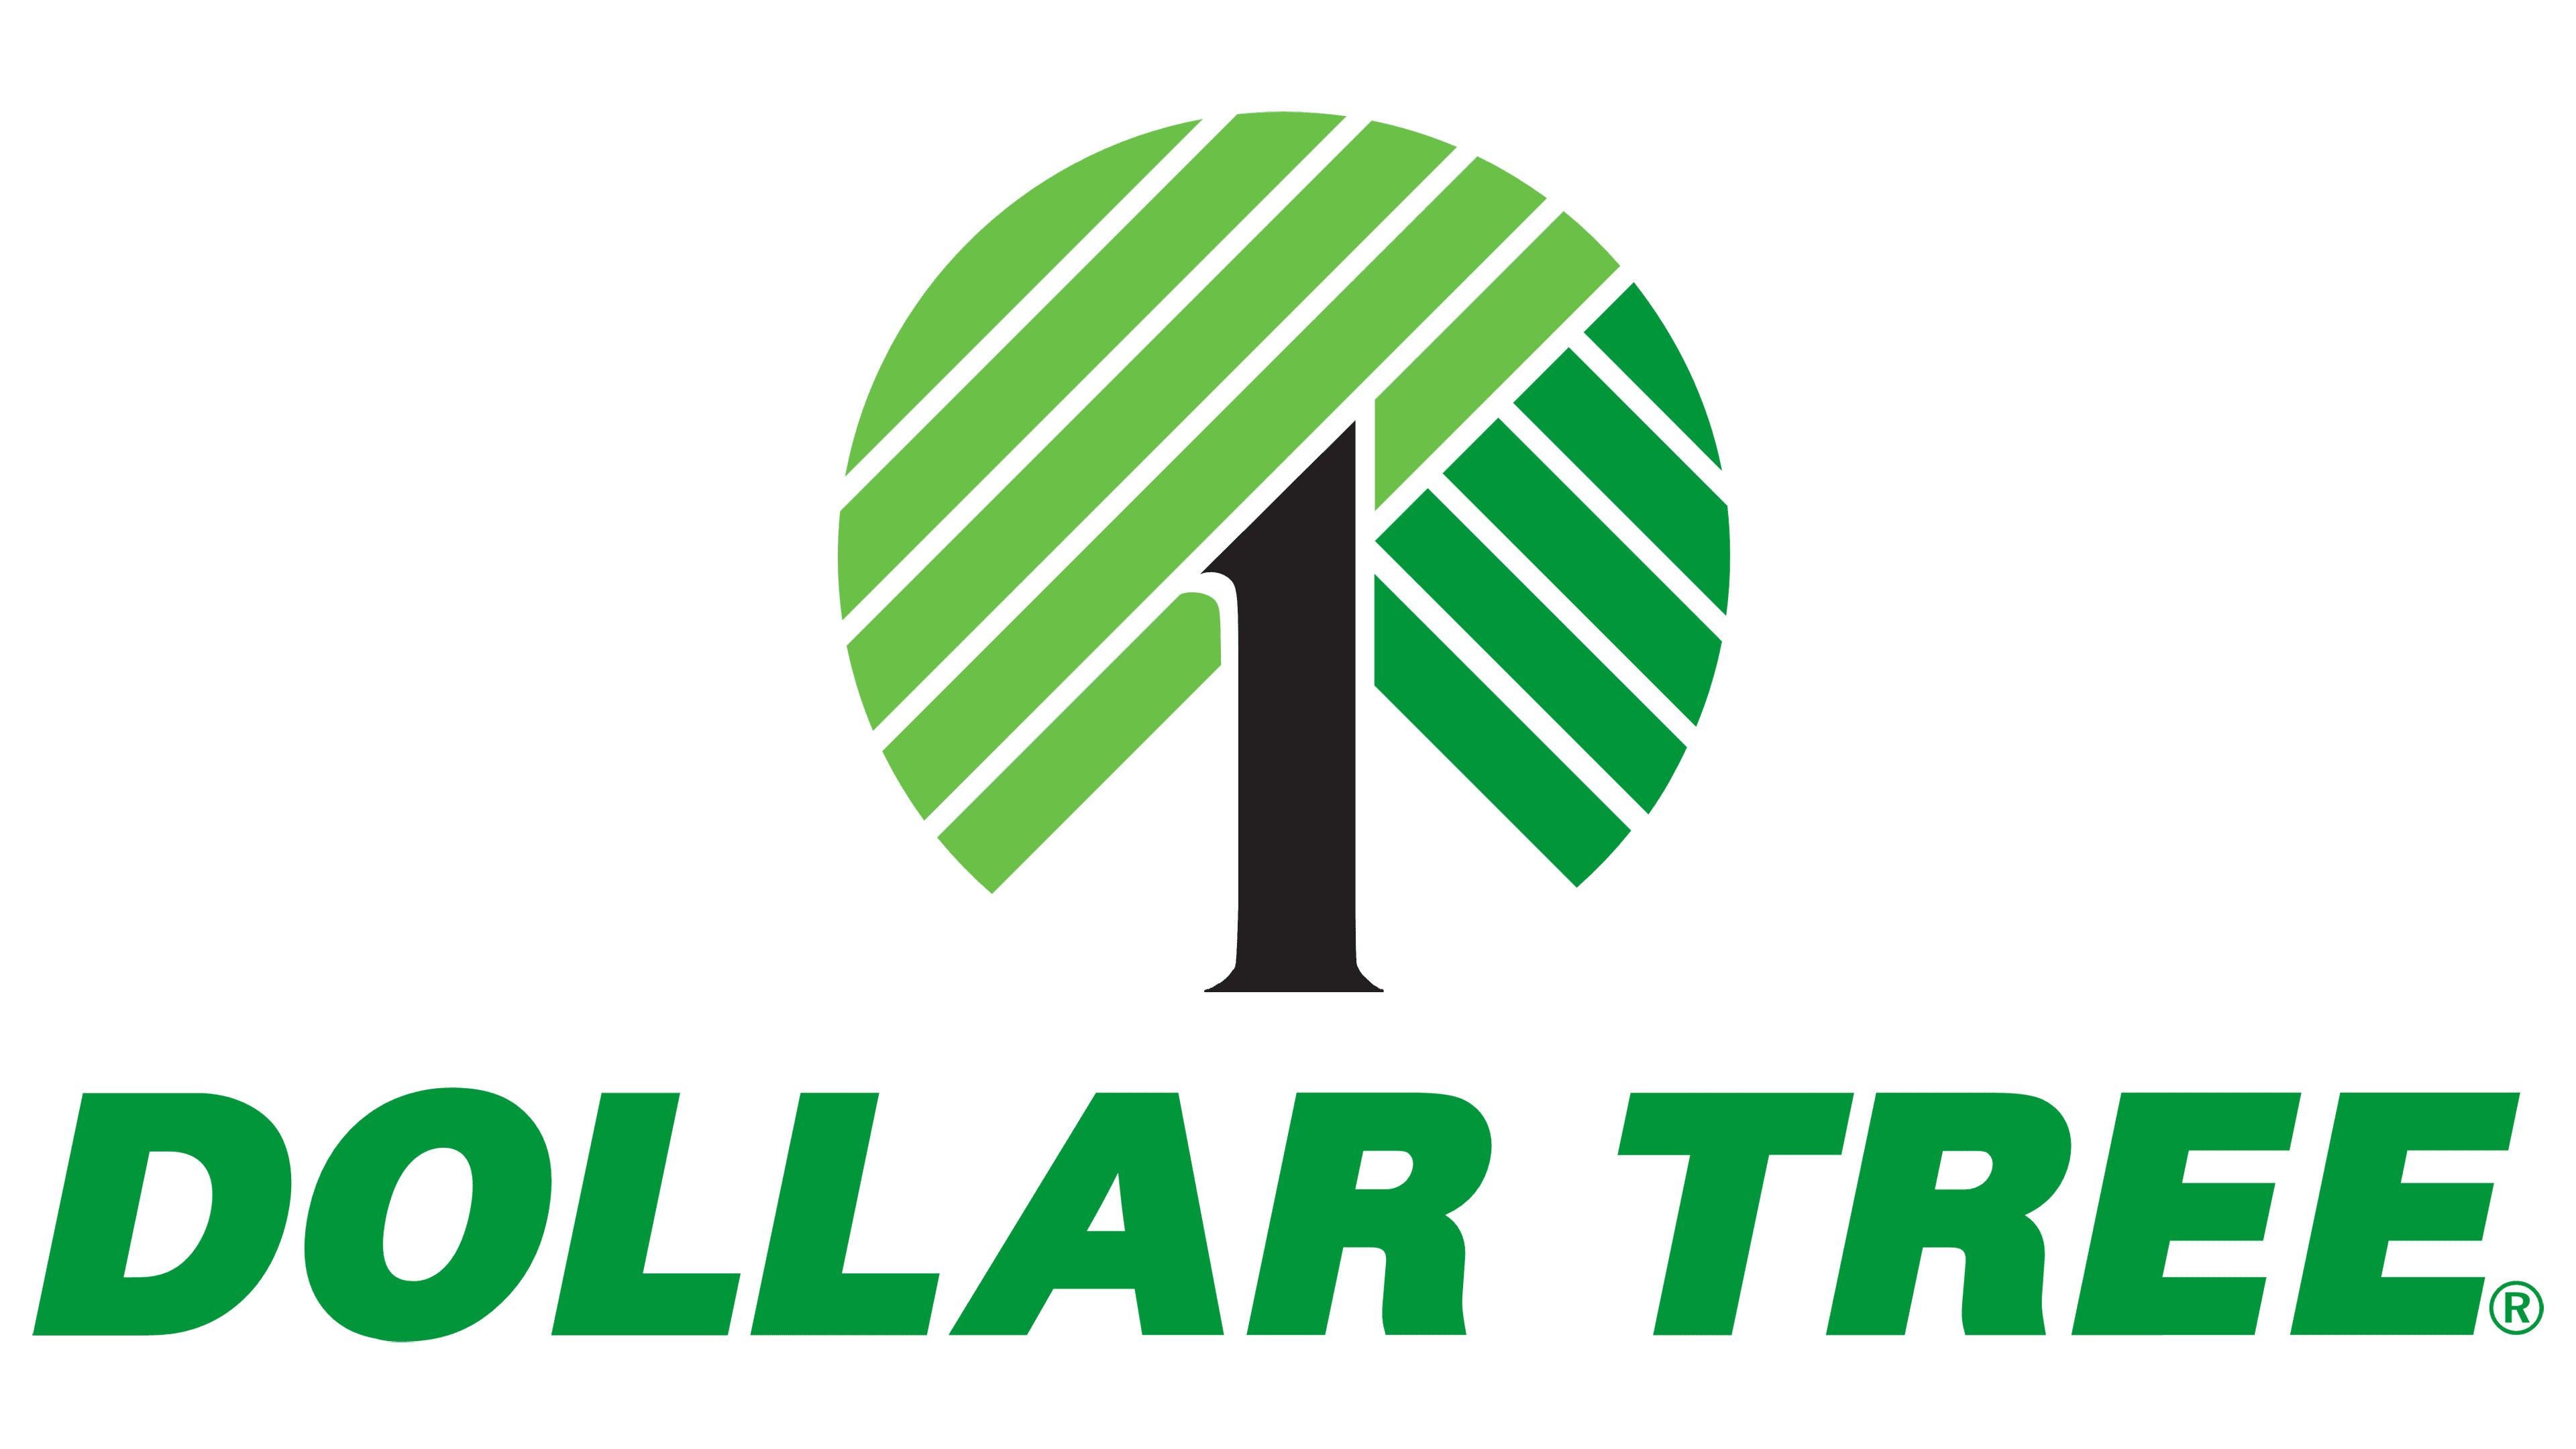 Dollar Tree Logo Logo